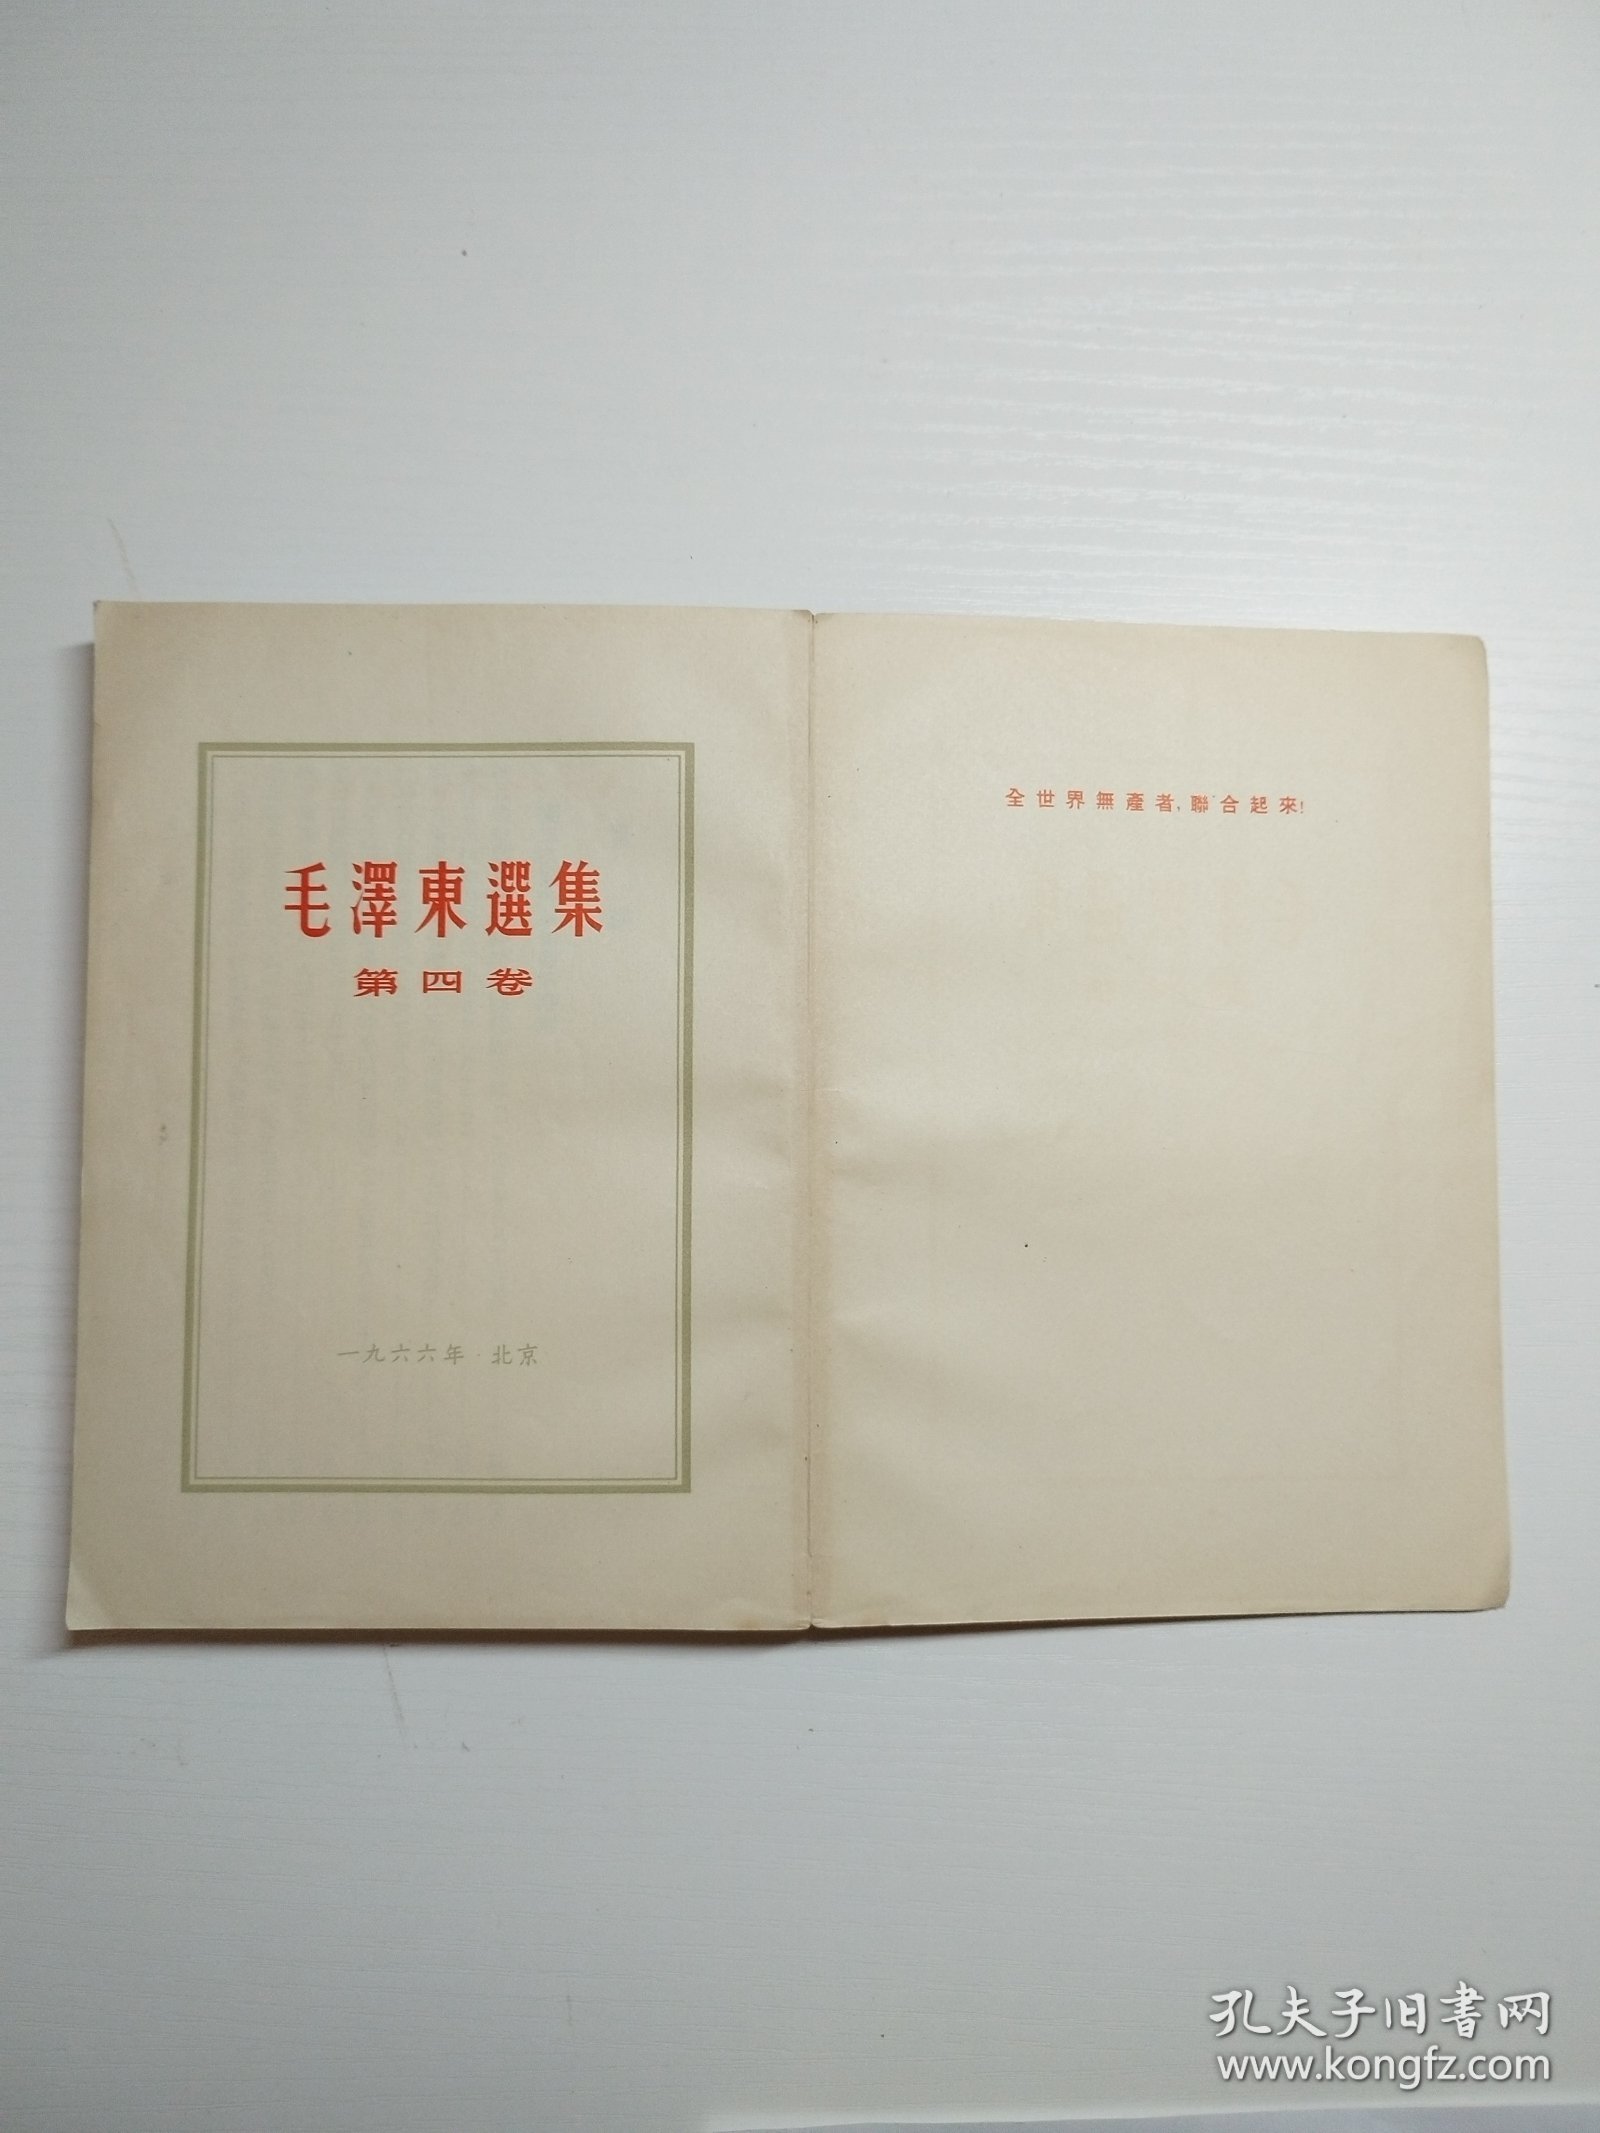 编号2033 毛泽东选集第4卷 白皮繁体 1966年5月上海印刷，全书内页干净，无划线、无写字、无涂改，没有阅读痕迹。封底有字见图 整体品相较佳，凑成套的拍，需要更多细节请私聊